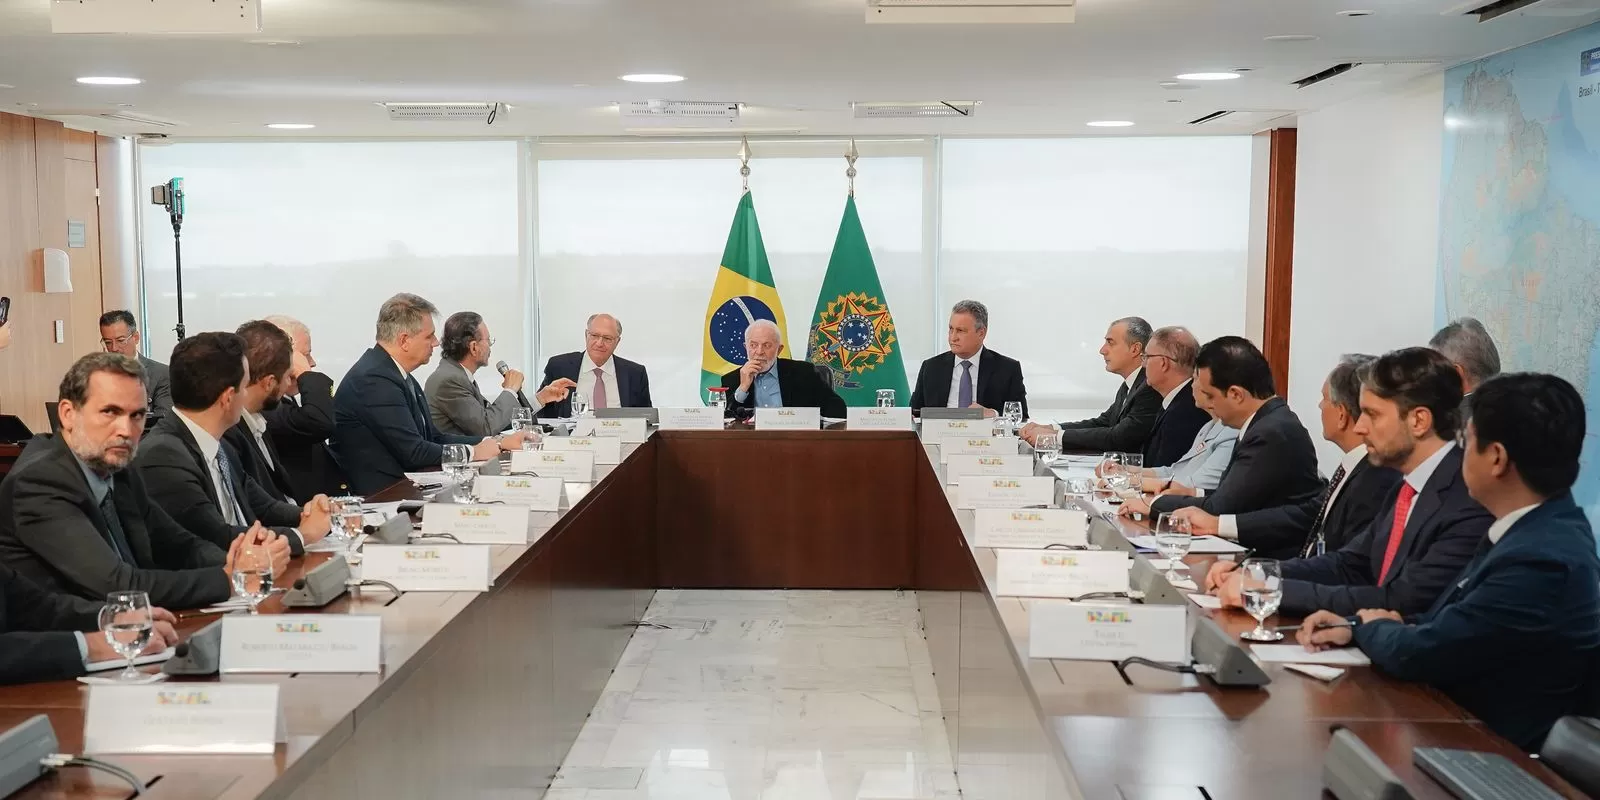 Você está visualizando atualmente Governo e montadoras debatem produção de carros bioelétricos no Brasil